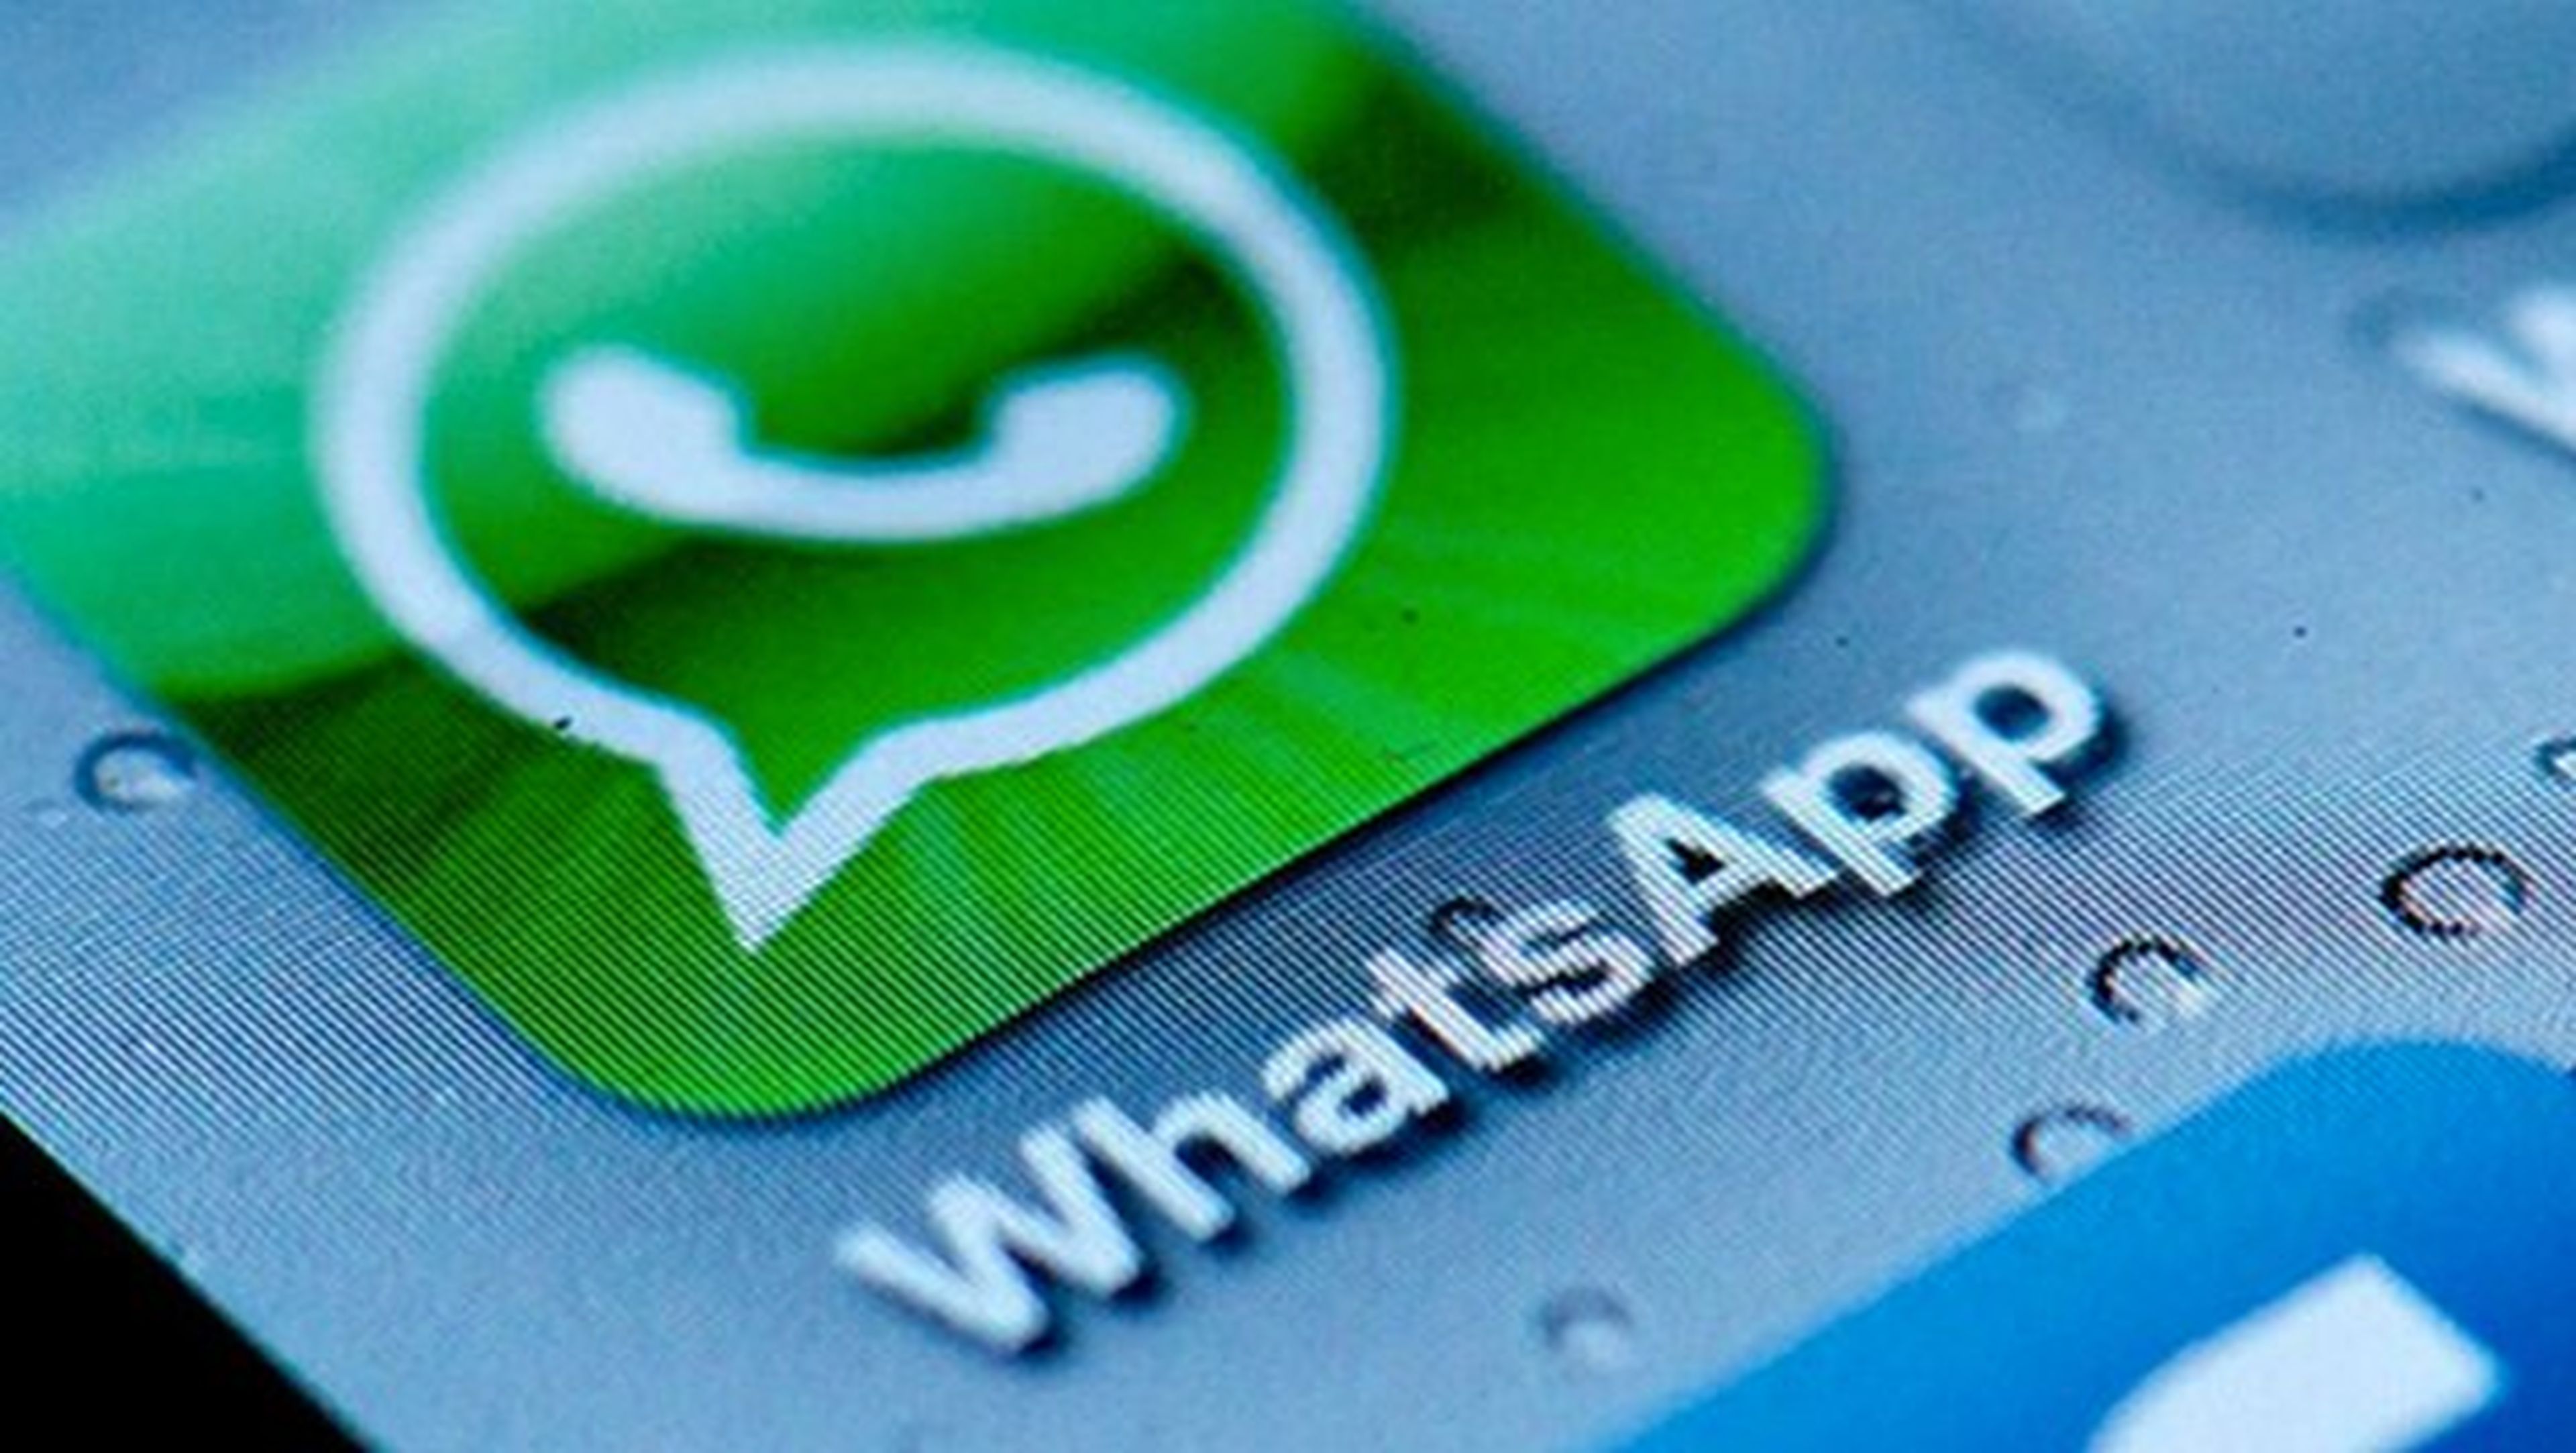 Llamadas y "triple check", nuevas funciones para WhatsApp